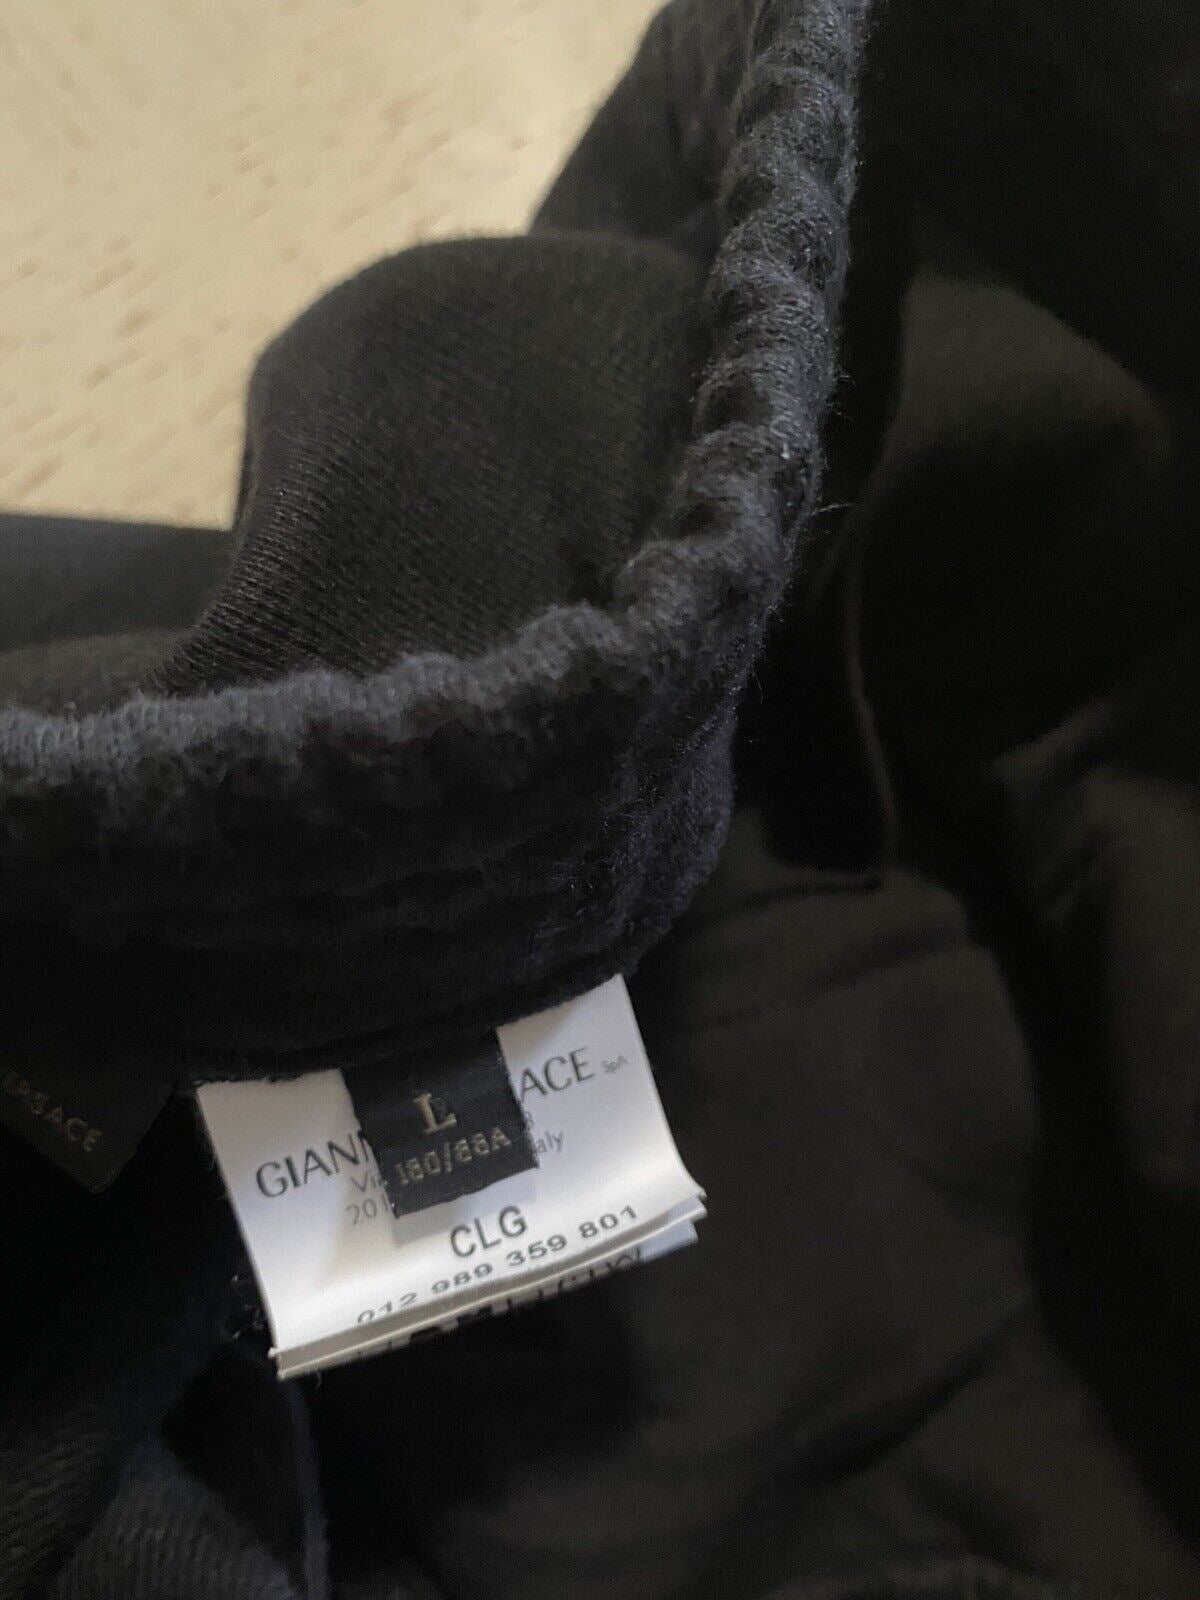 $980 Versace Mens Cotton Short Pants Black Size L Italy